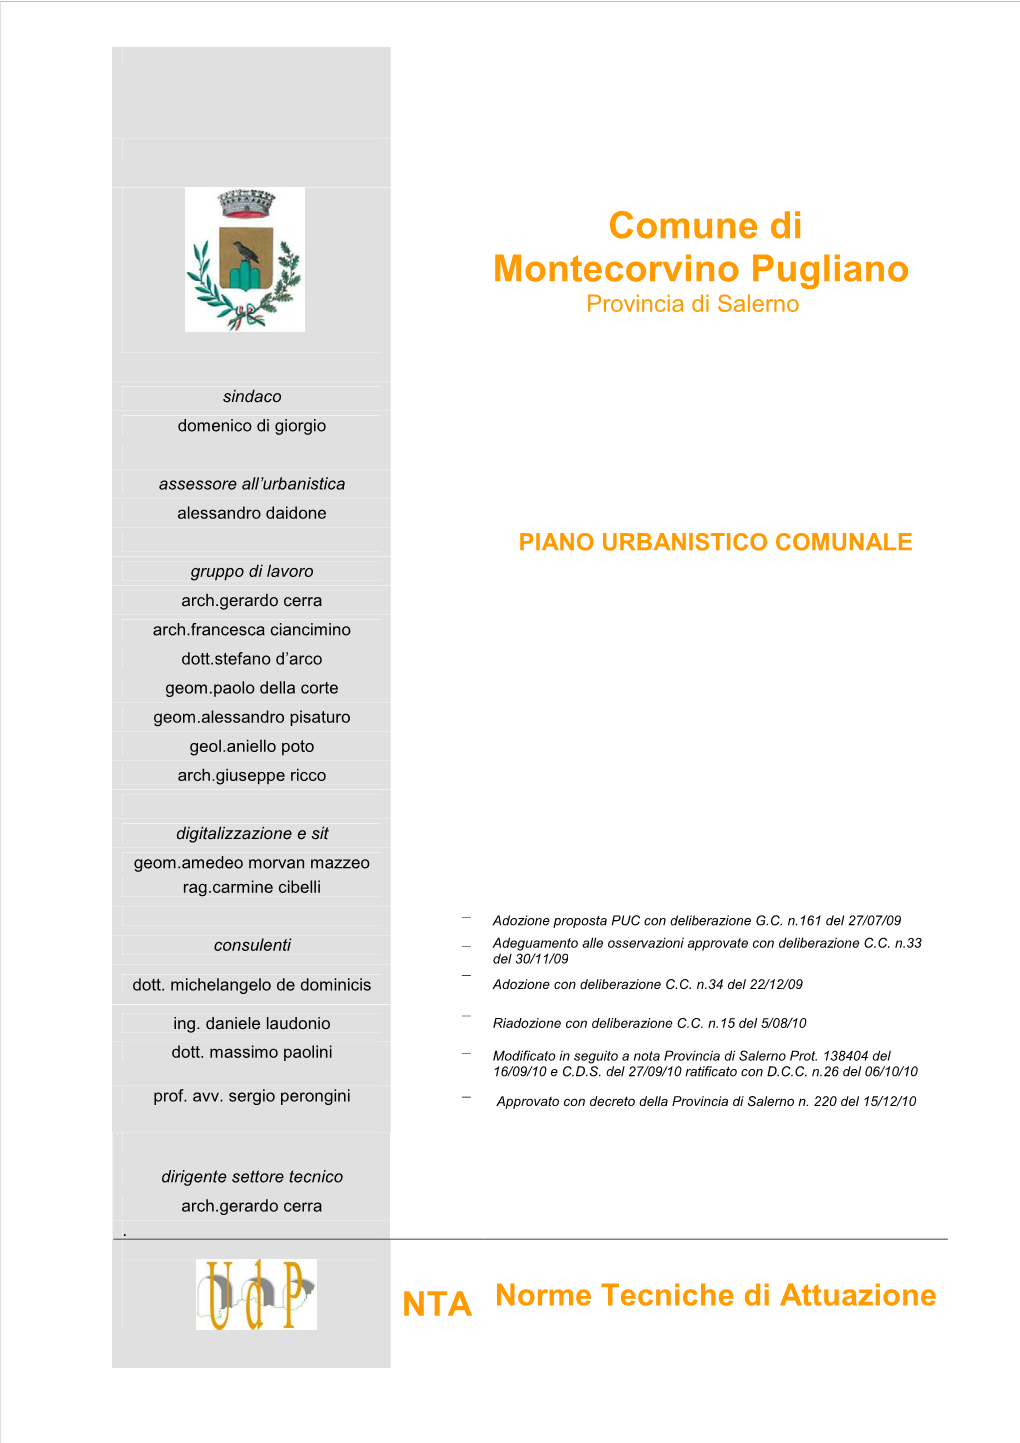 Comune Di Montecorvino Pugliano (Sa)